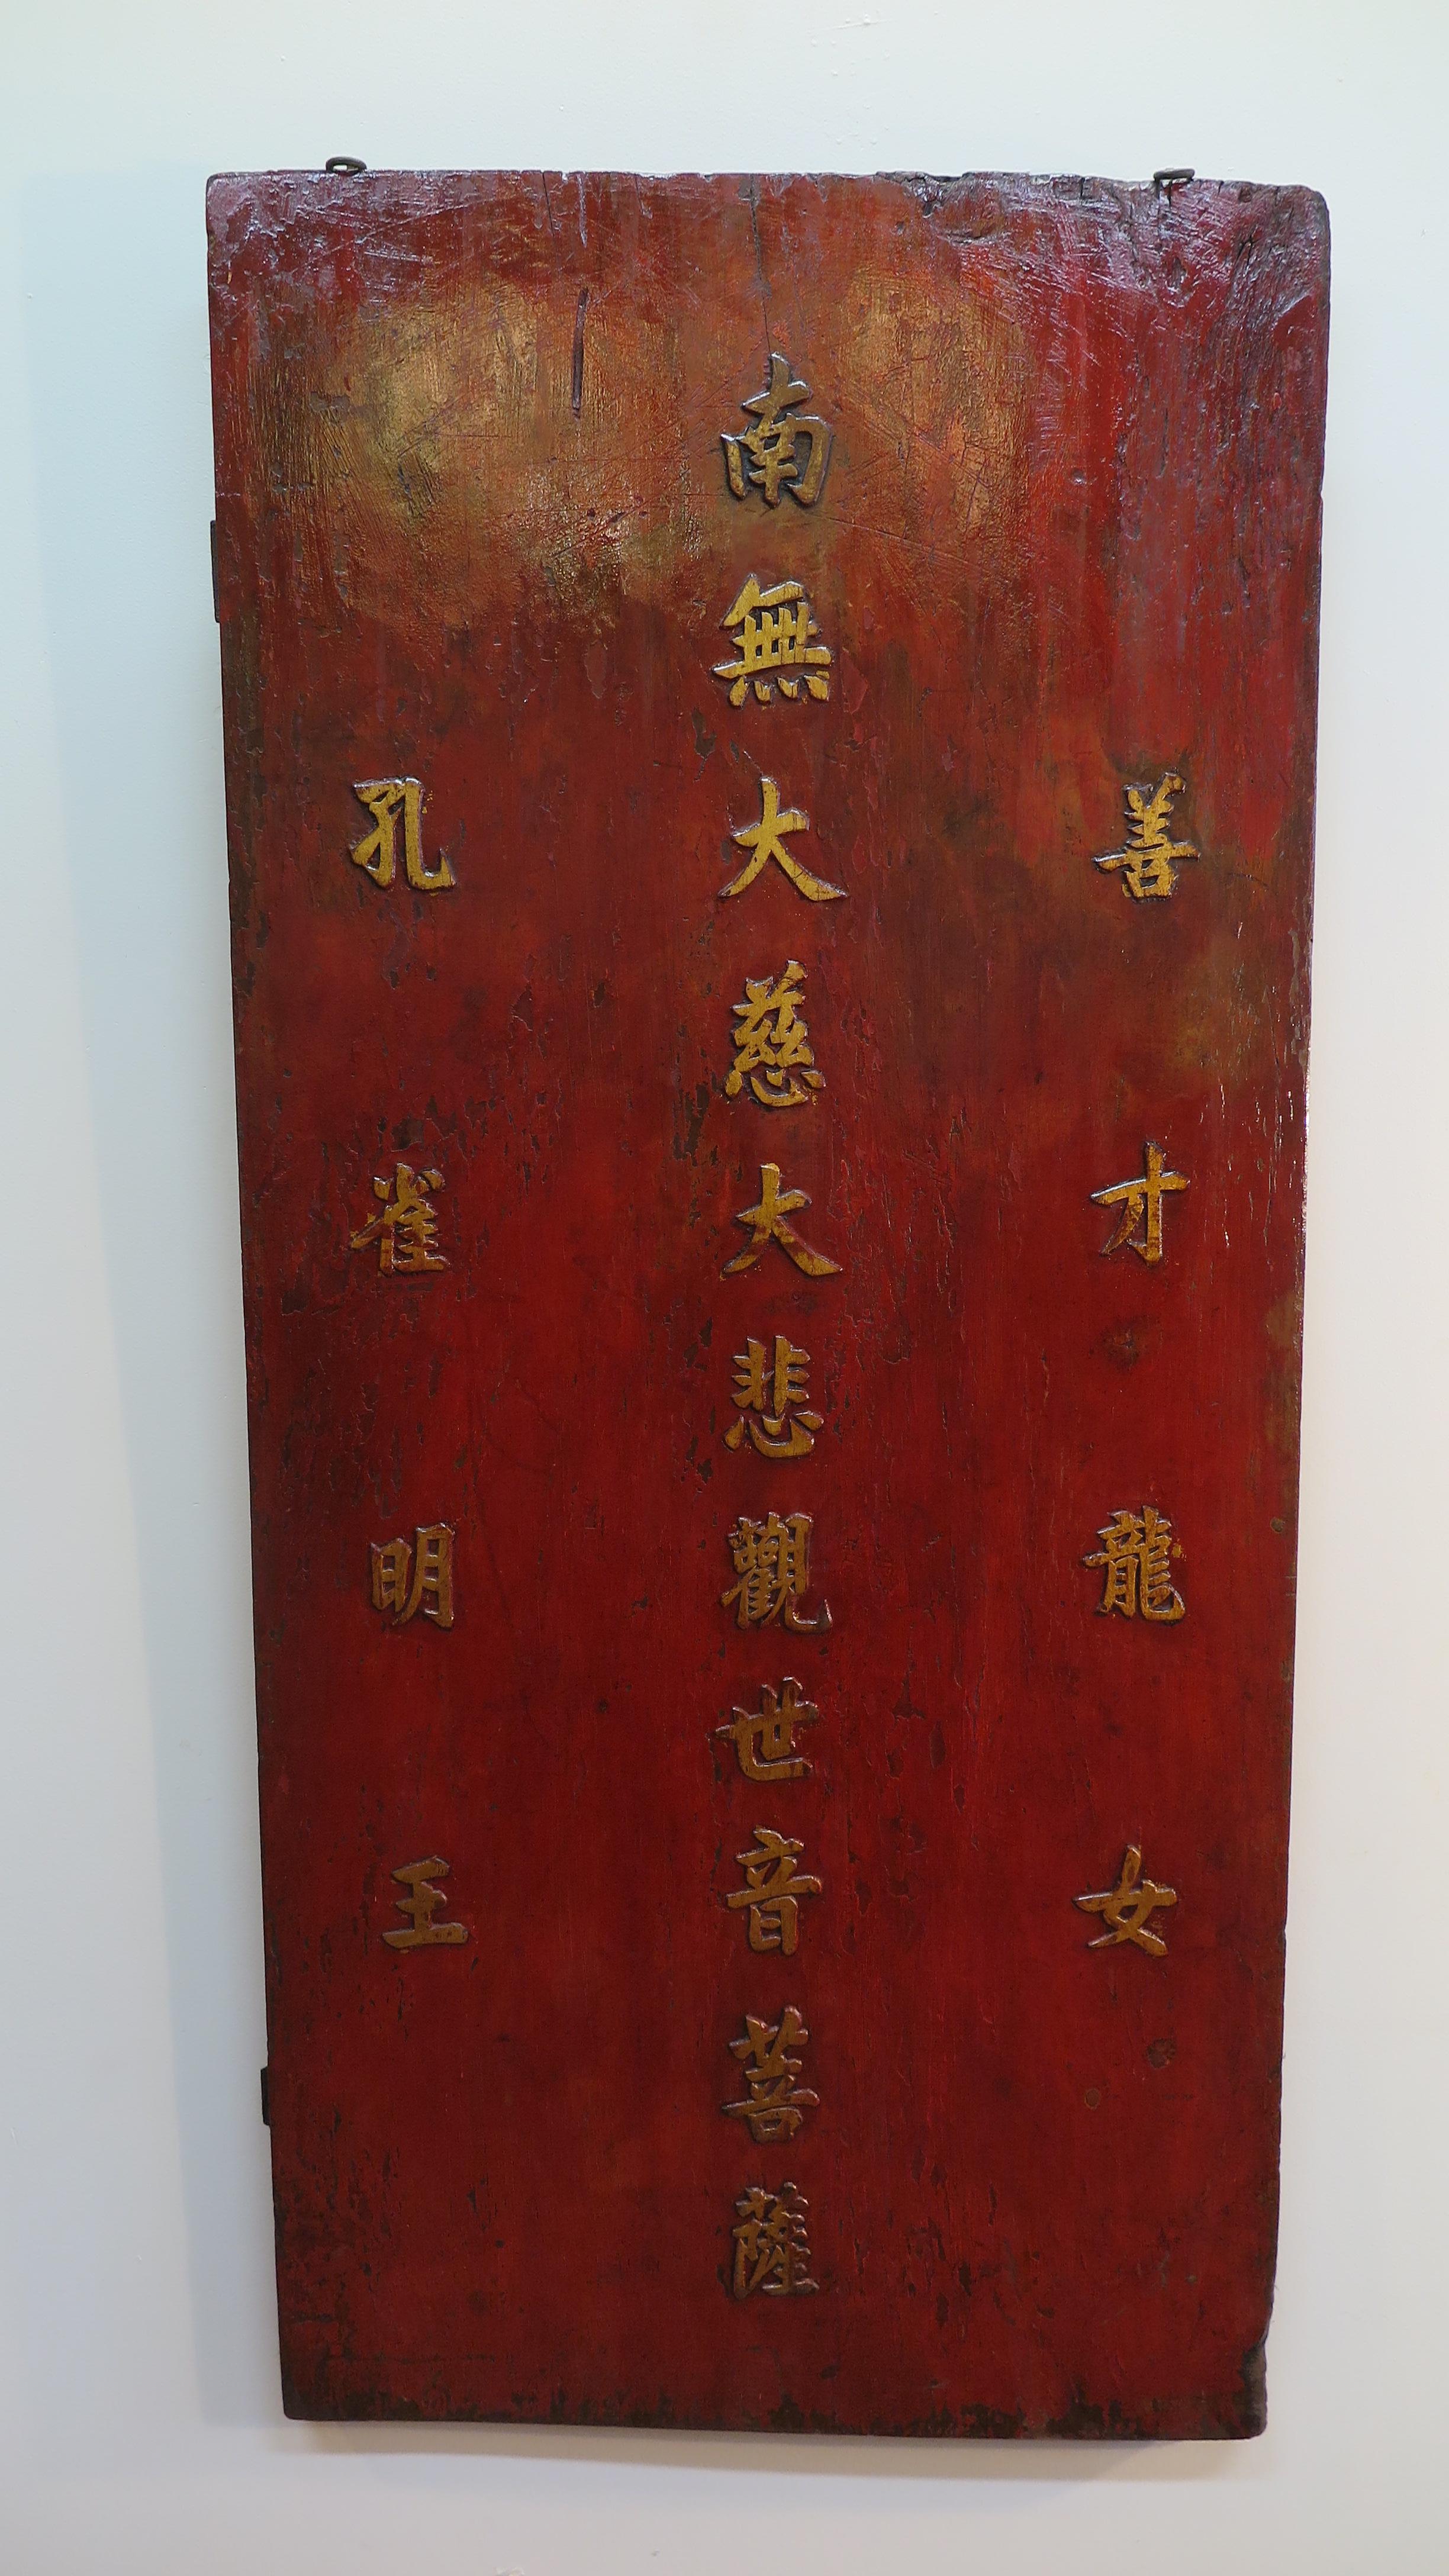 Seltene buddhistische taoistische Gebetstafel aus dem 19.  Schön geschnitzt vergoldet Kalligraphie Gebetstafel Segen.  Dies ist ein einzigartiges Massivholzbrett.  
Ein ganz besonderer und heiliger Segen wurde nicht in die Holztafel, sondern aus der